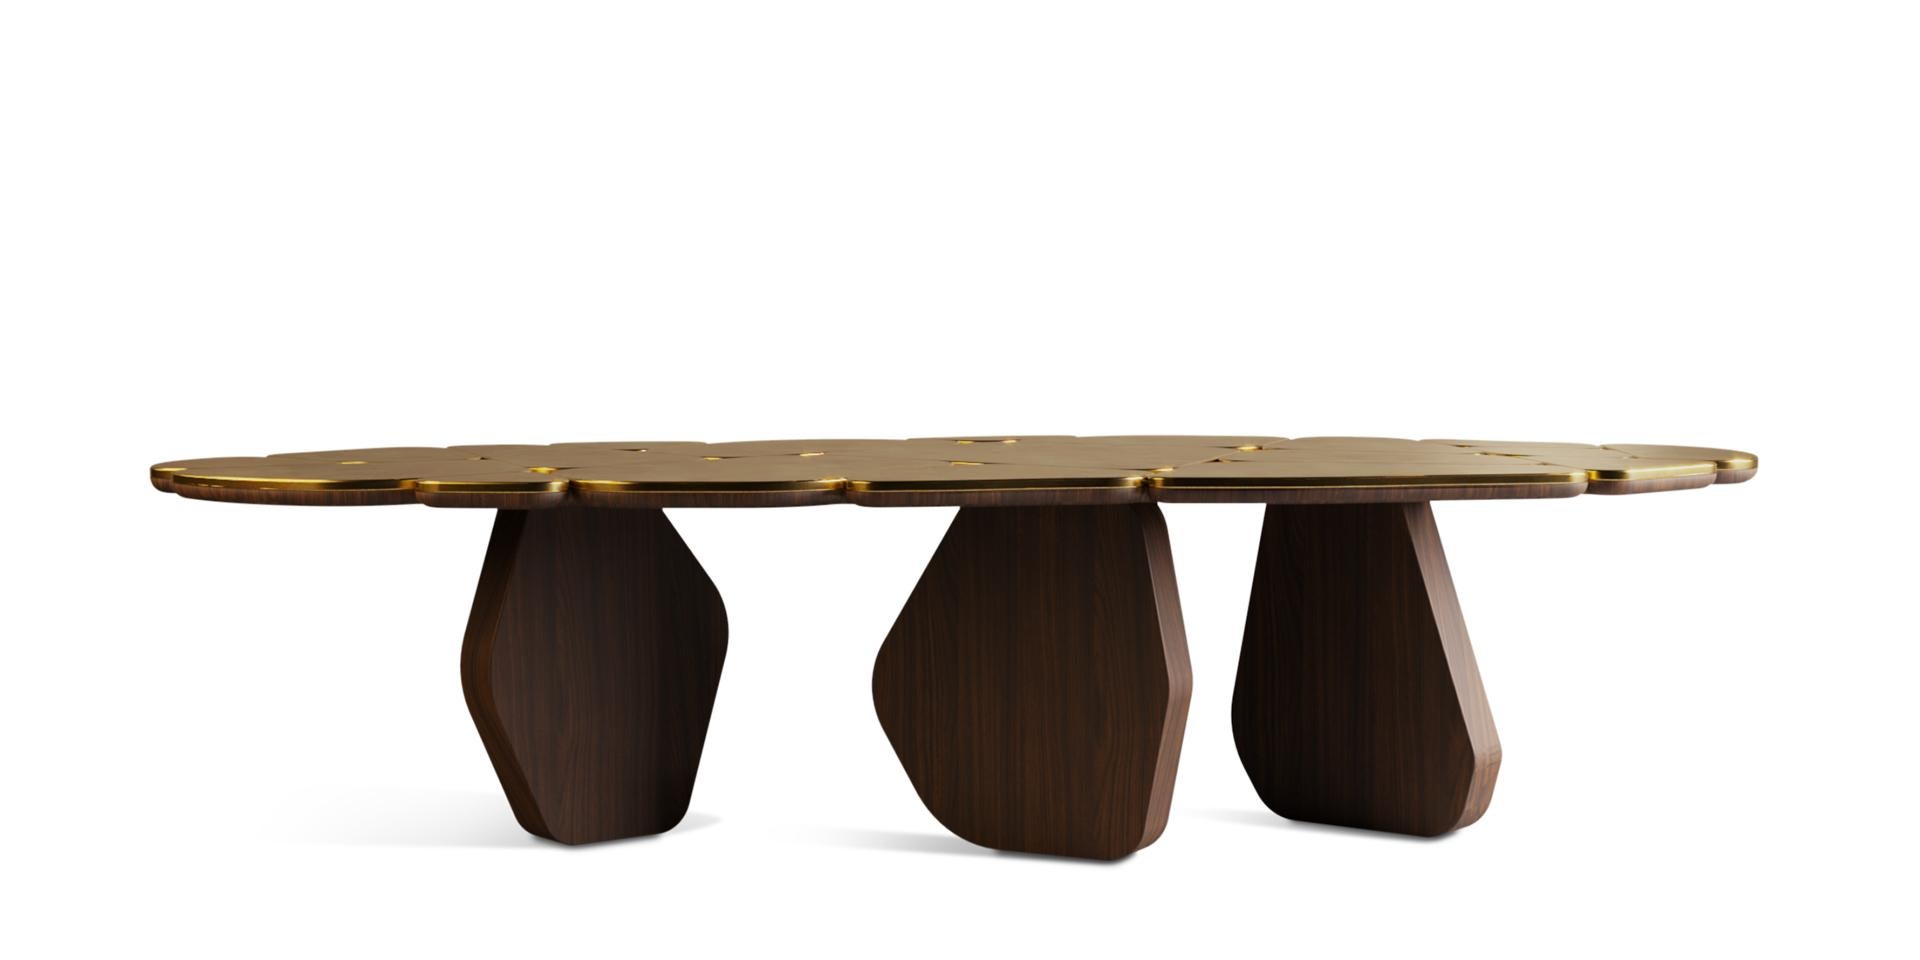 La table à manger Anta da Arca présente des détails distinctifs qui en font une combinaison délicate entre le bois de noyer le mieux travaillé et la touche de feuille d'or dans les tons.

Cette pièce a été conçue pour les moments de convivialité, le